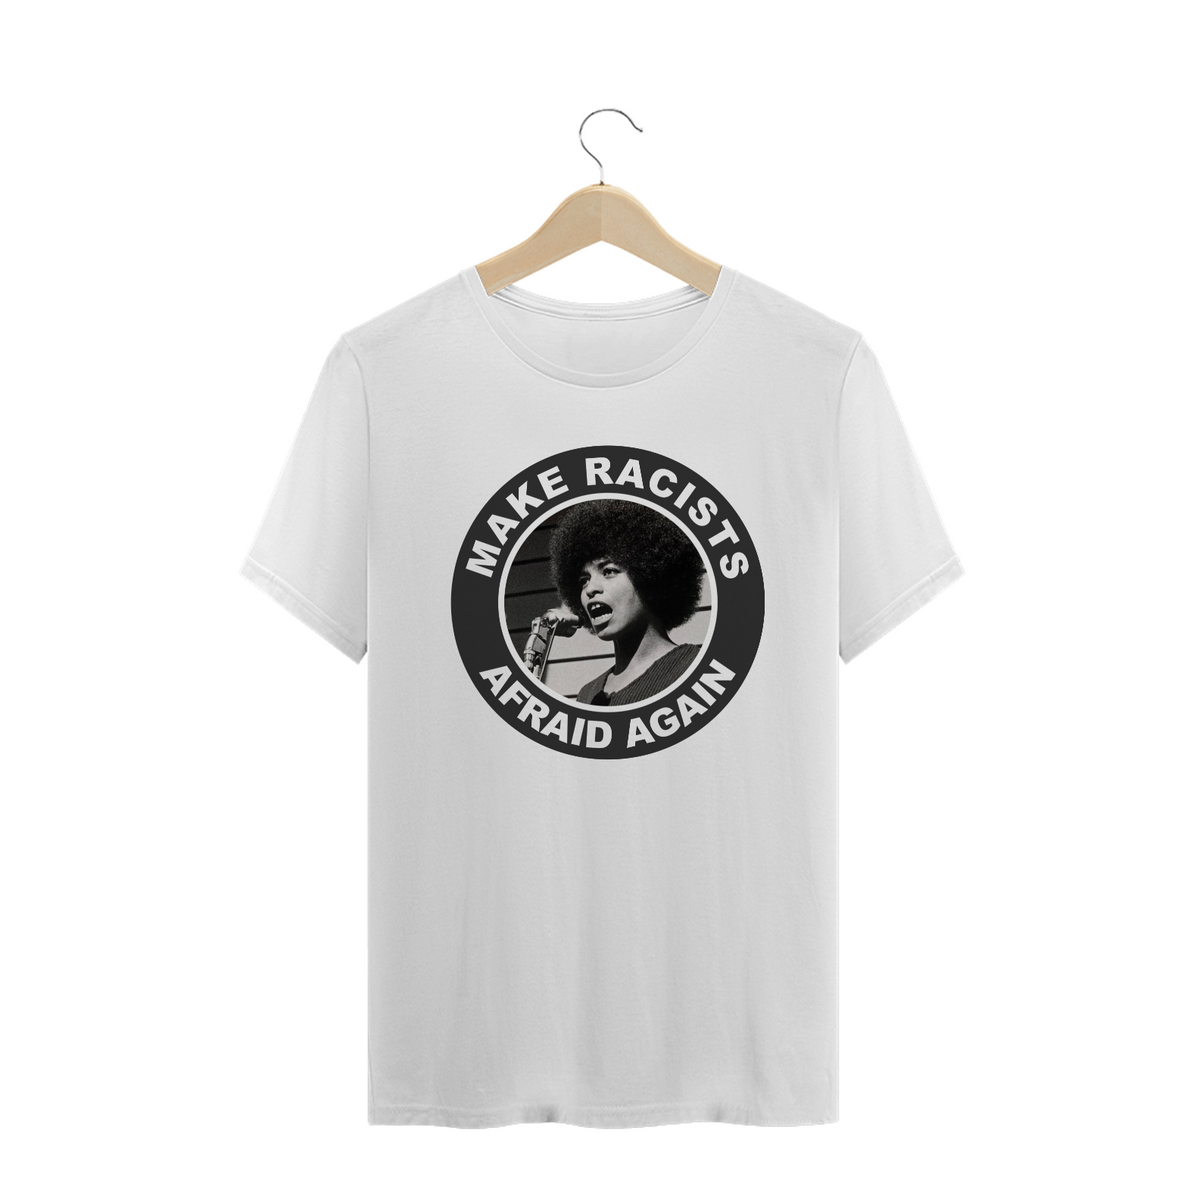 Nome do produto: Camiseta Racists Afraid - Angela Davis